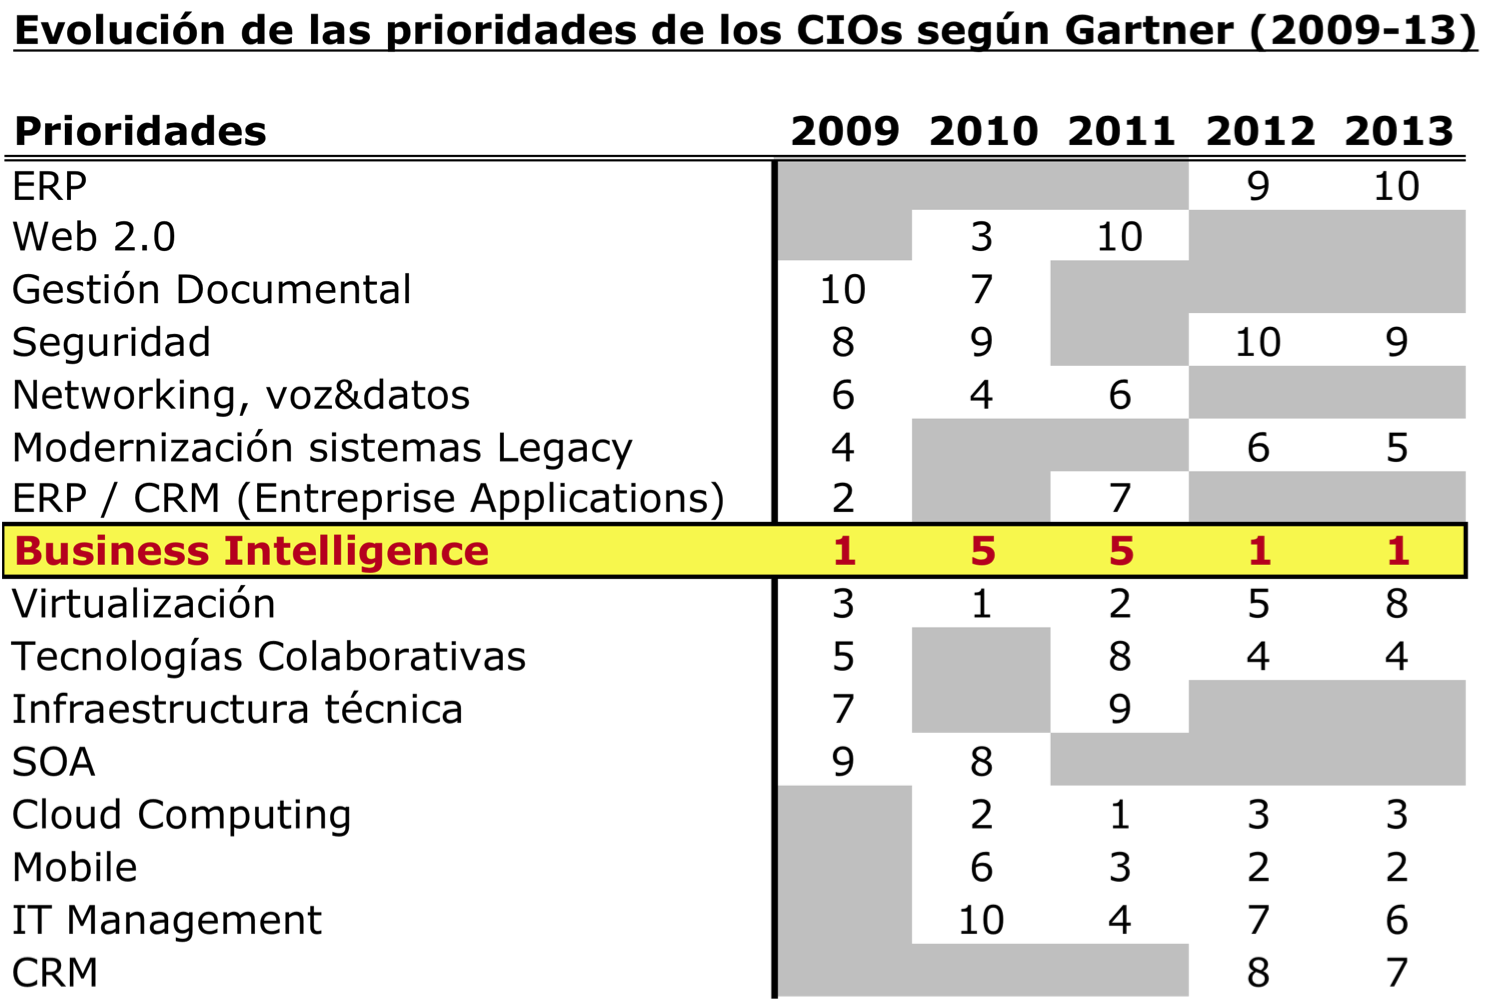 Evolución de las Prioridades de los CIOs en los últimos 5 años según Gartner (2009 - 2013)